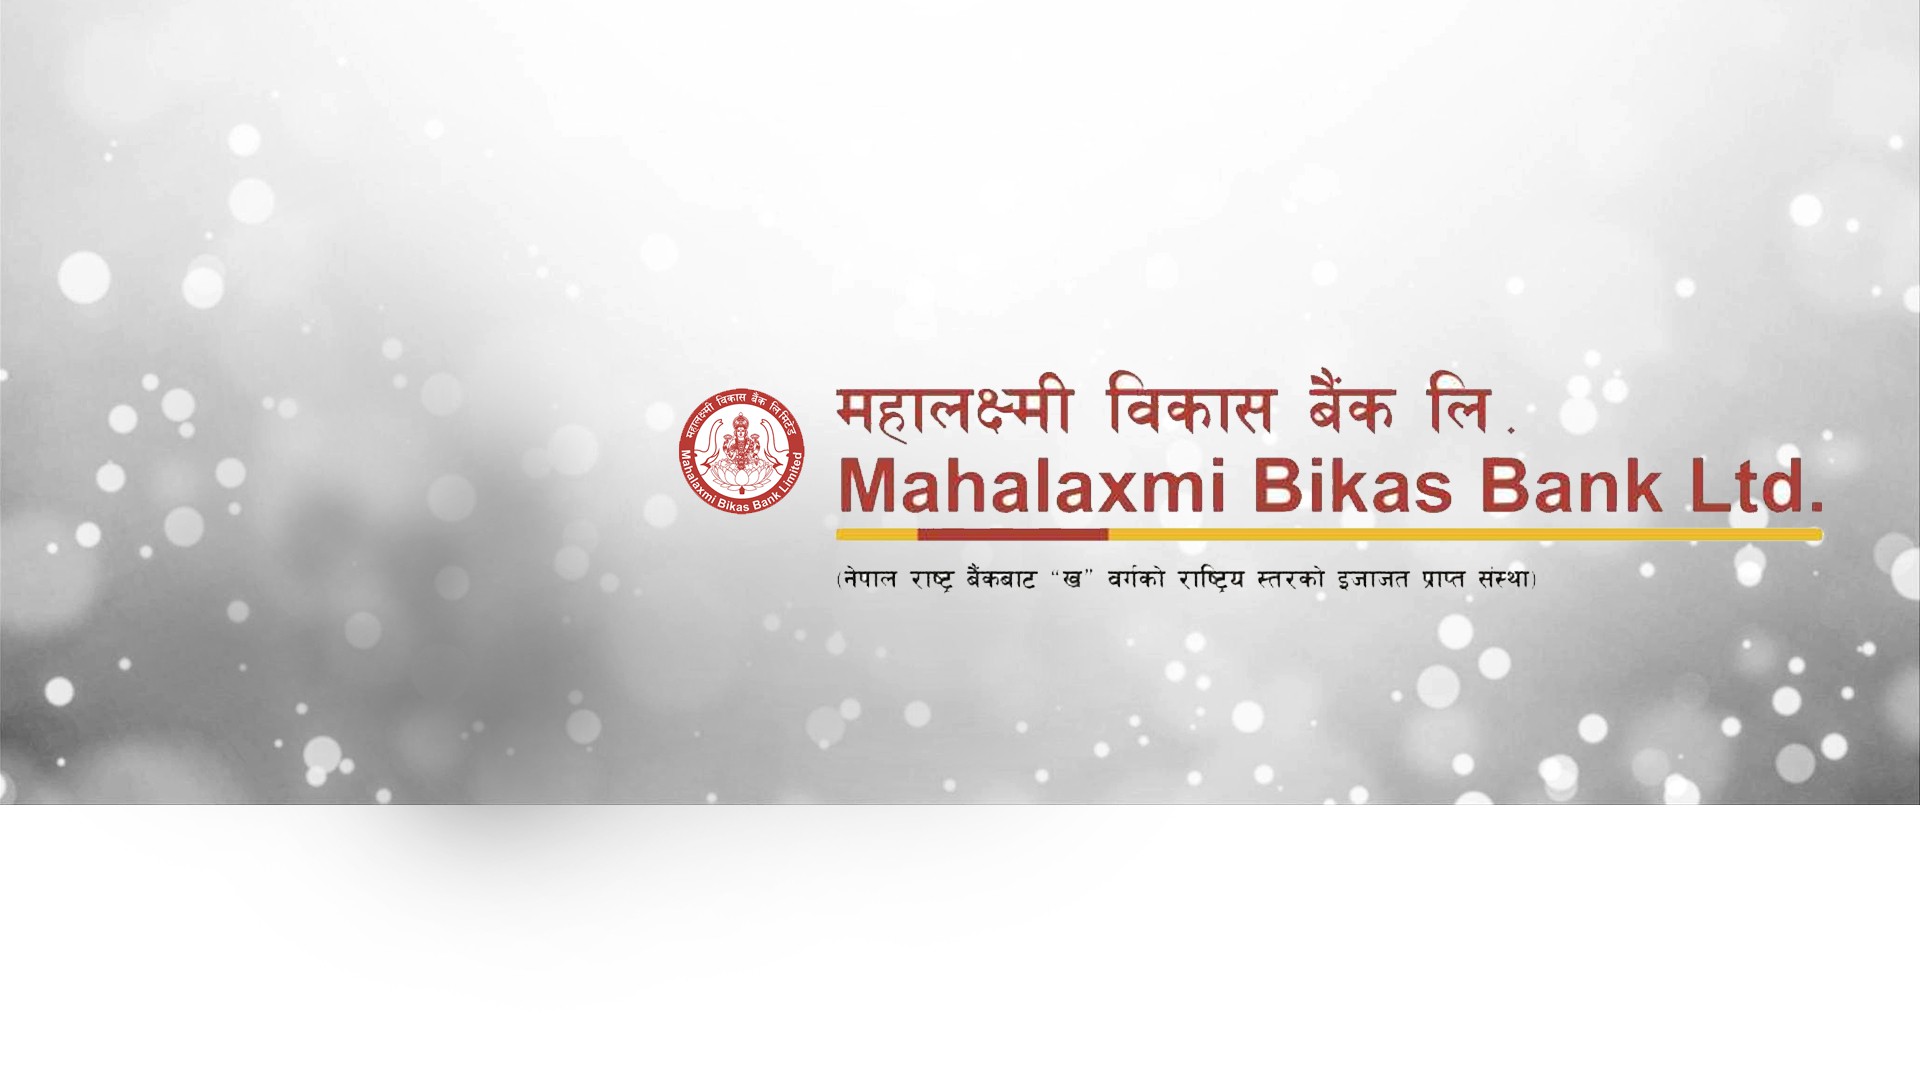 Mahalaxmi Bikas Bank Limited banner